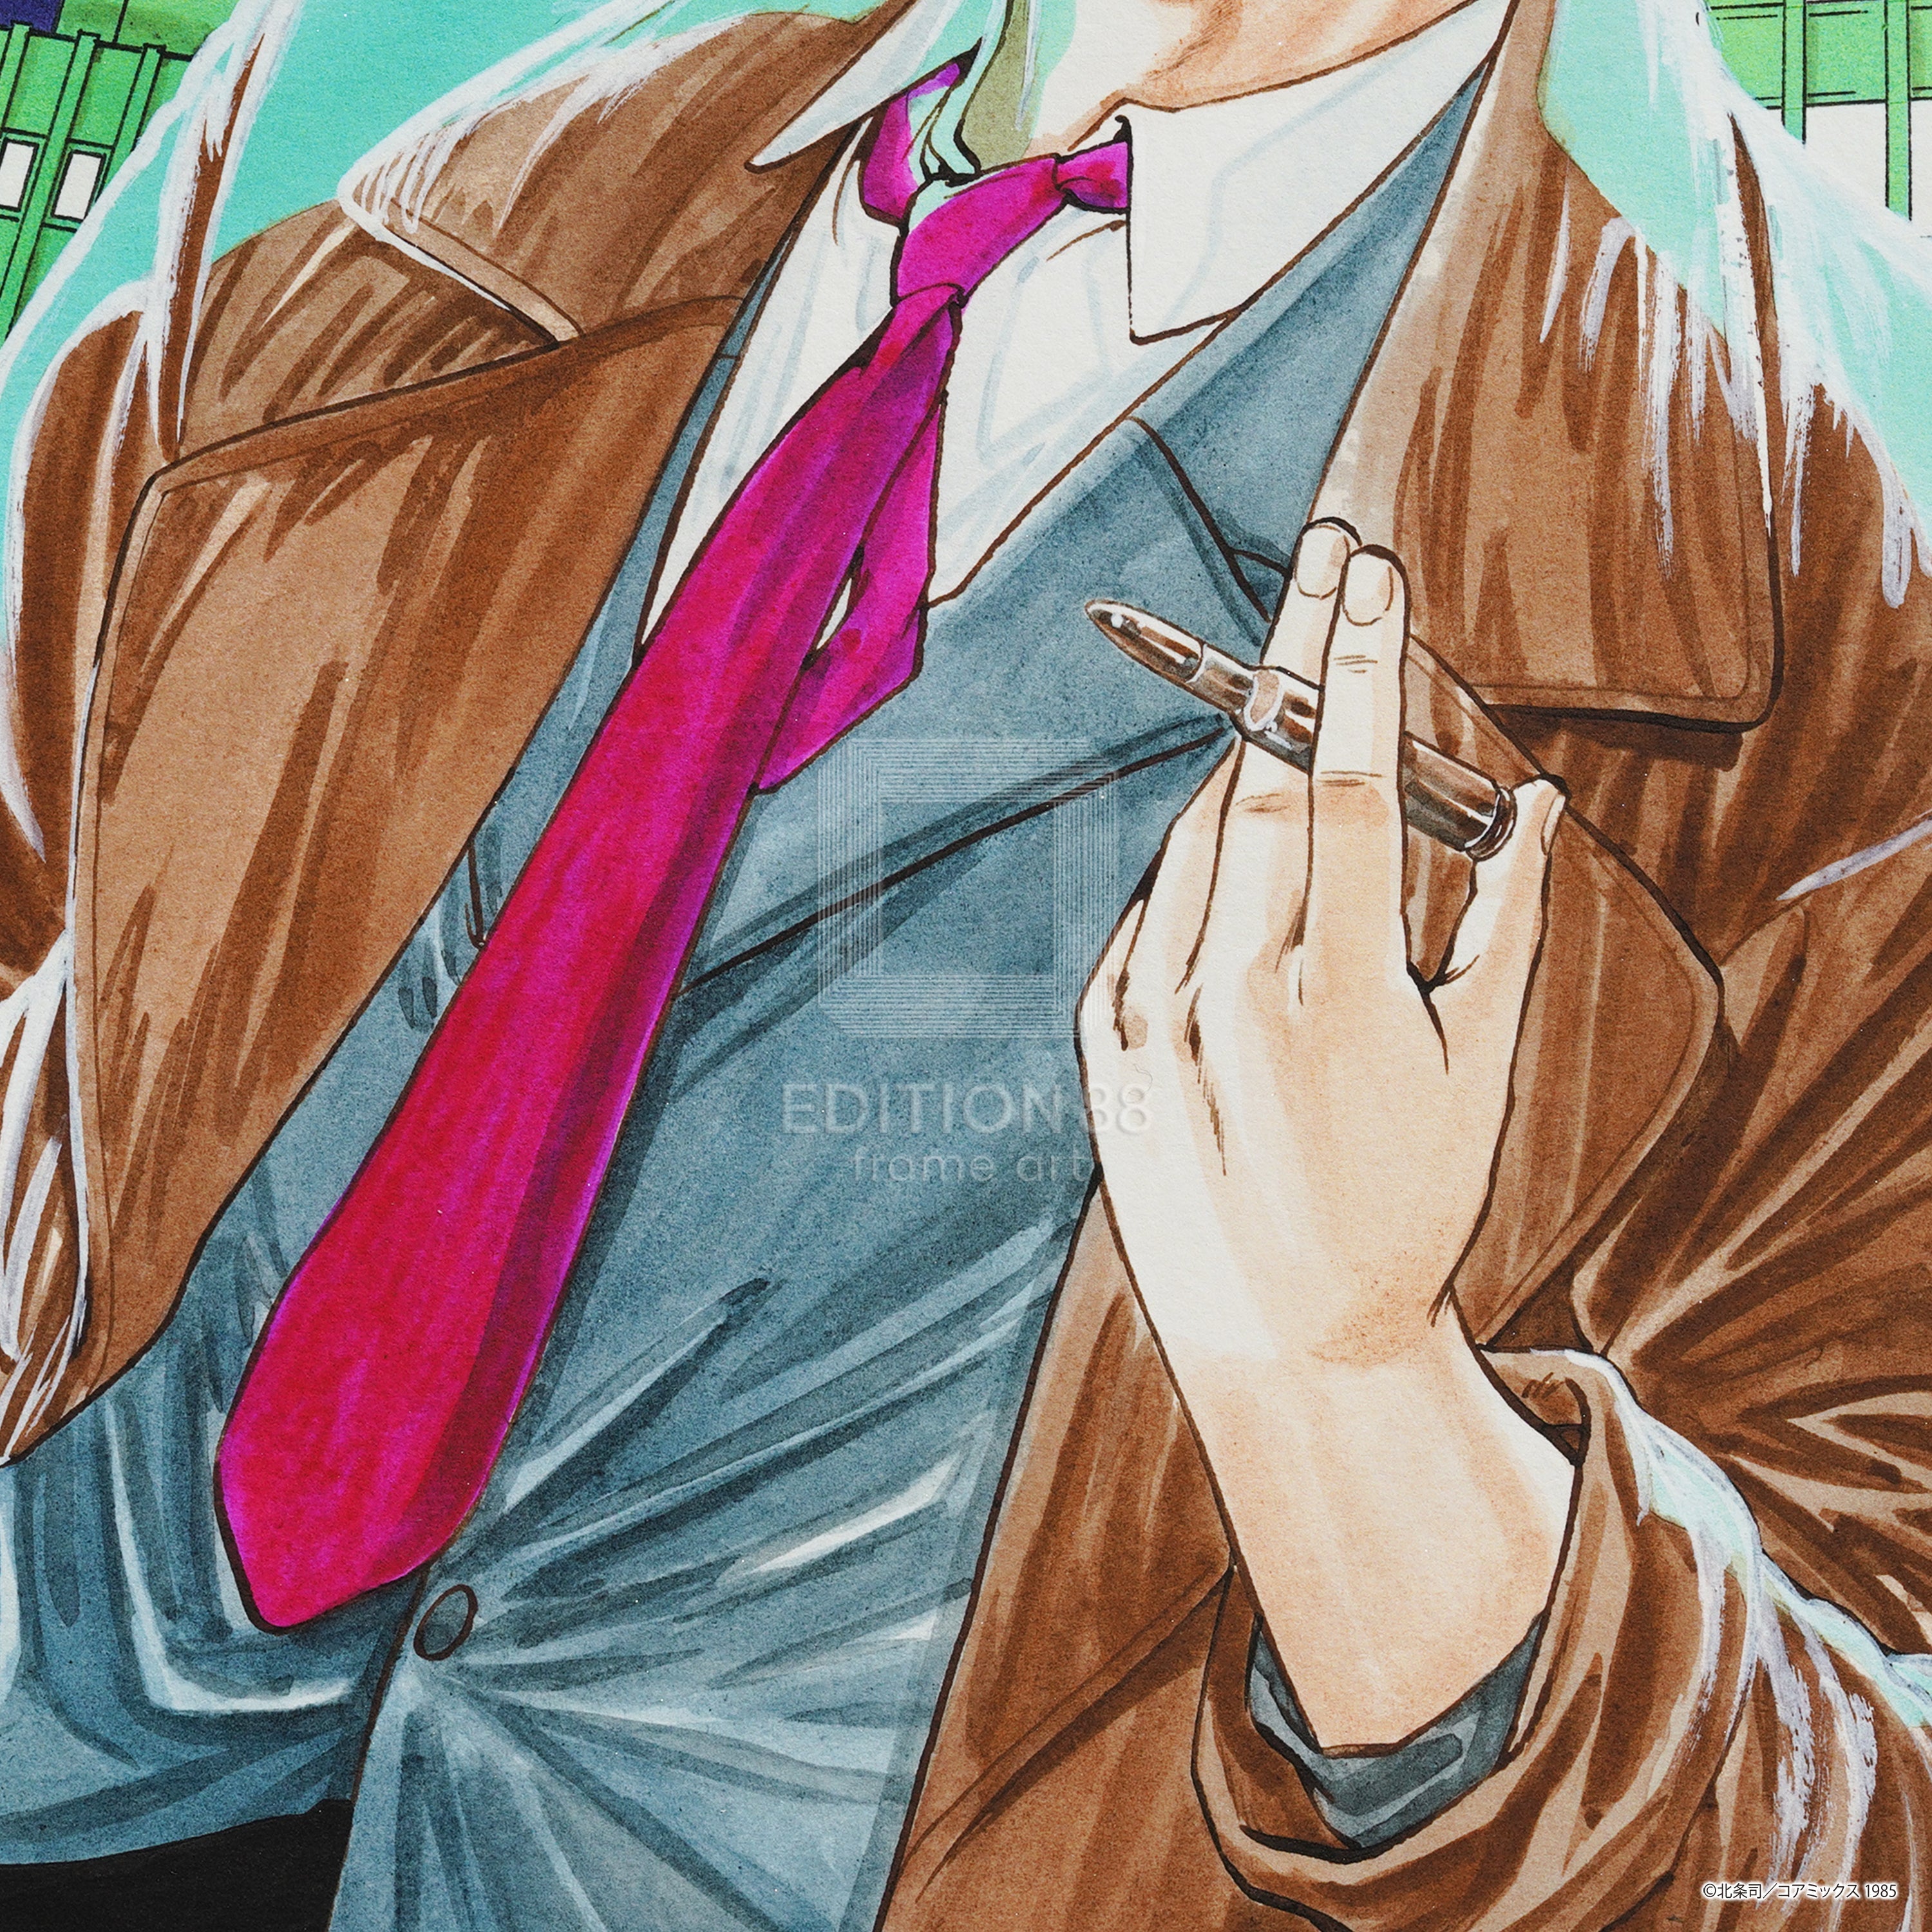 City Hunter, 88Graph #4 / Tsukasa Hojo